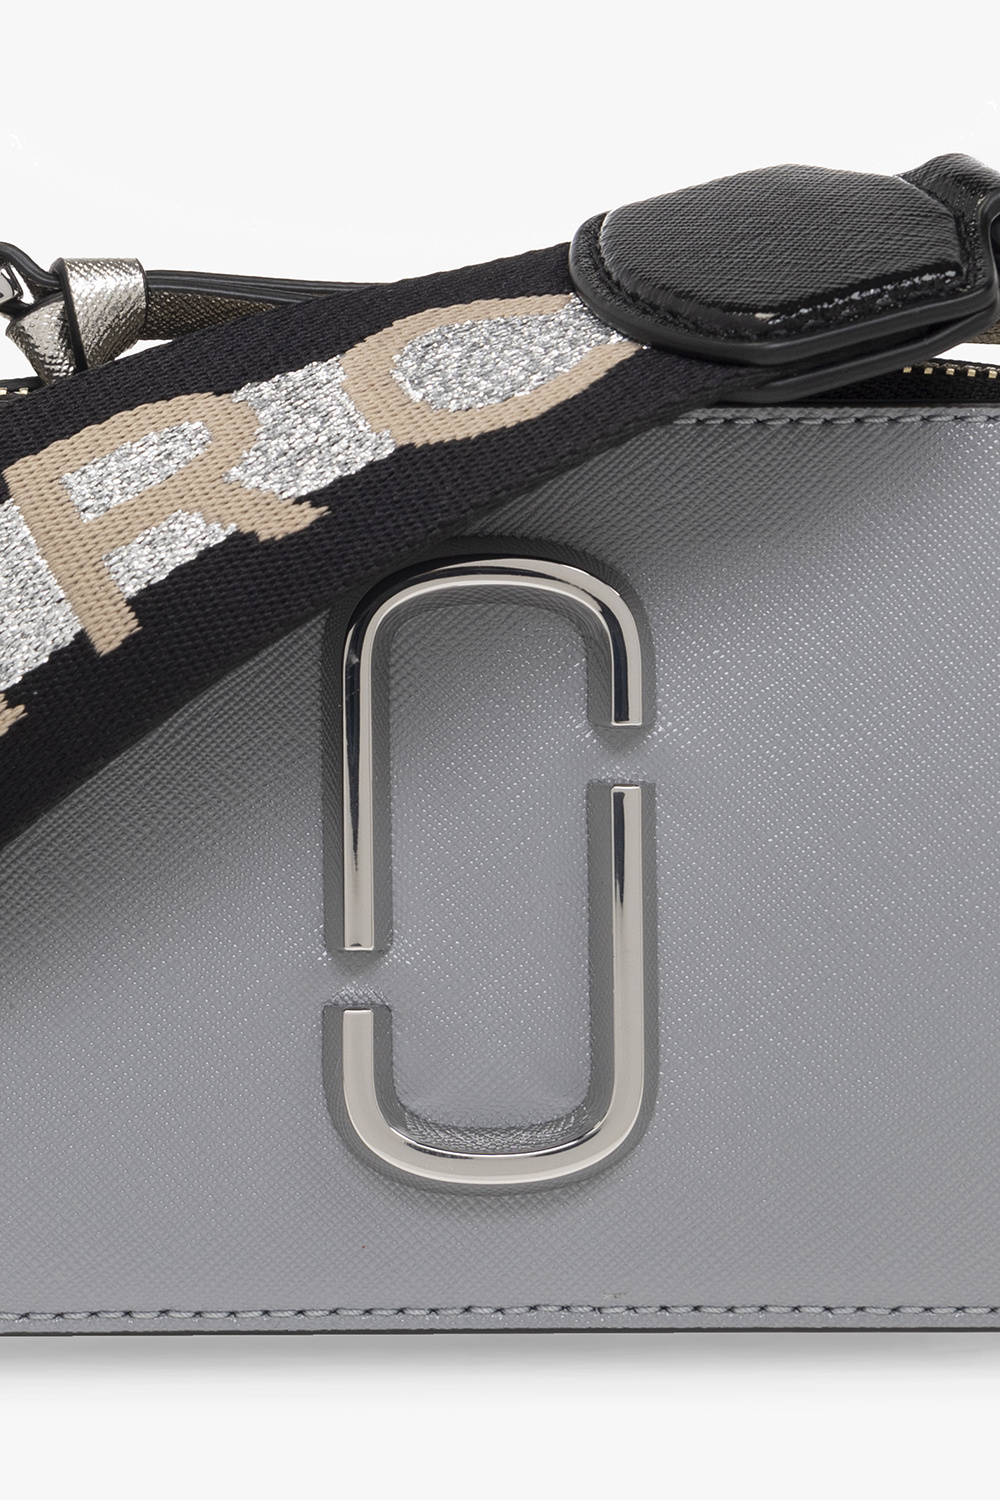 Marc Jacobs Snapshot shoulder bag silver